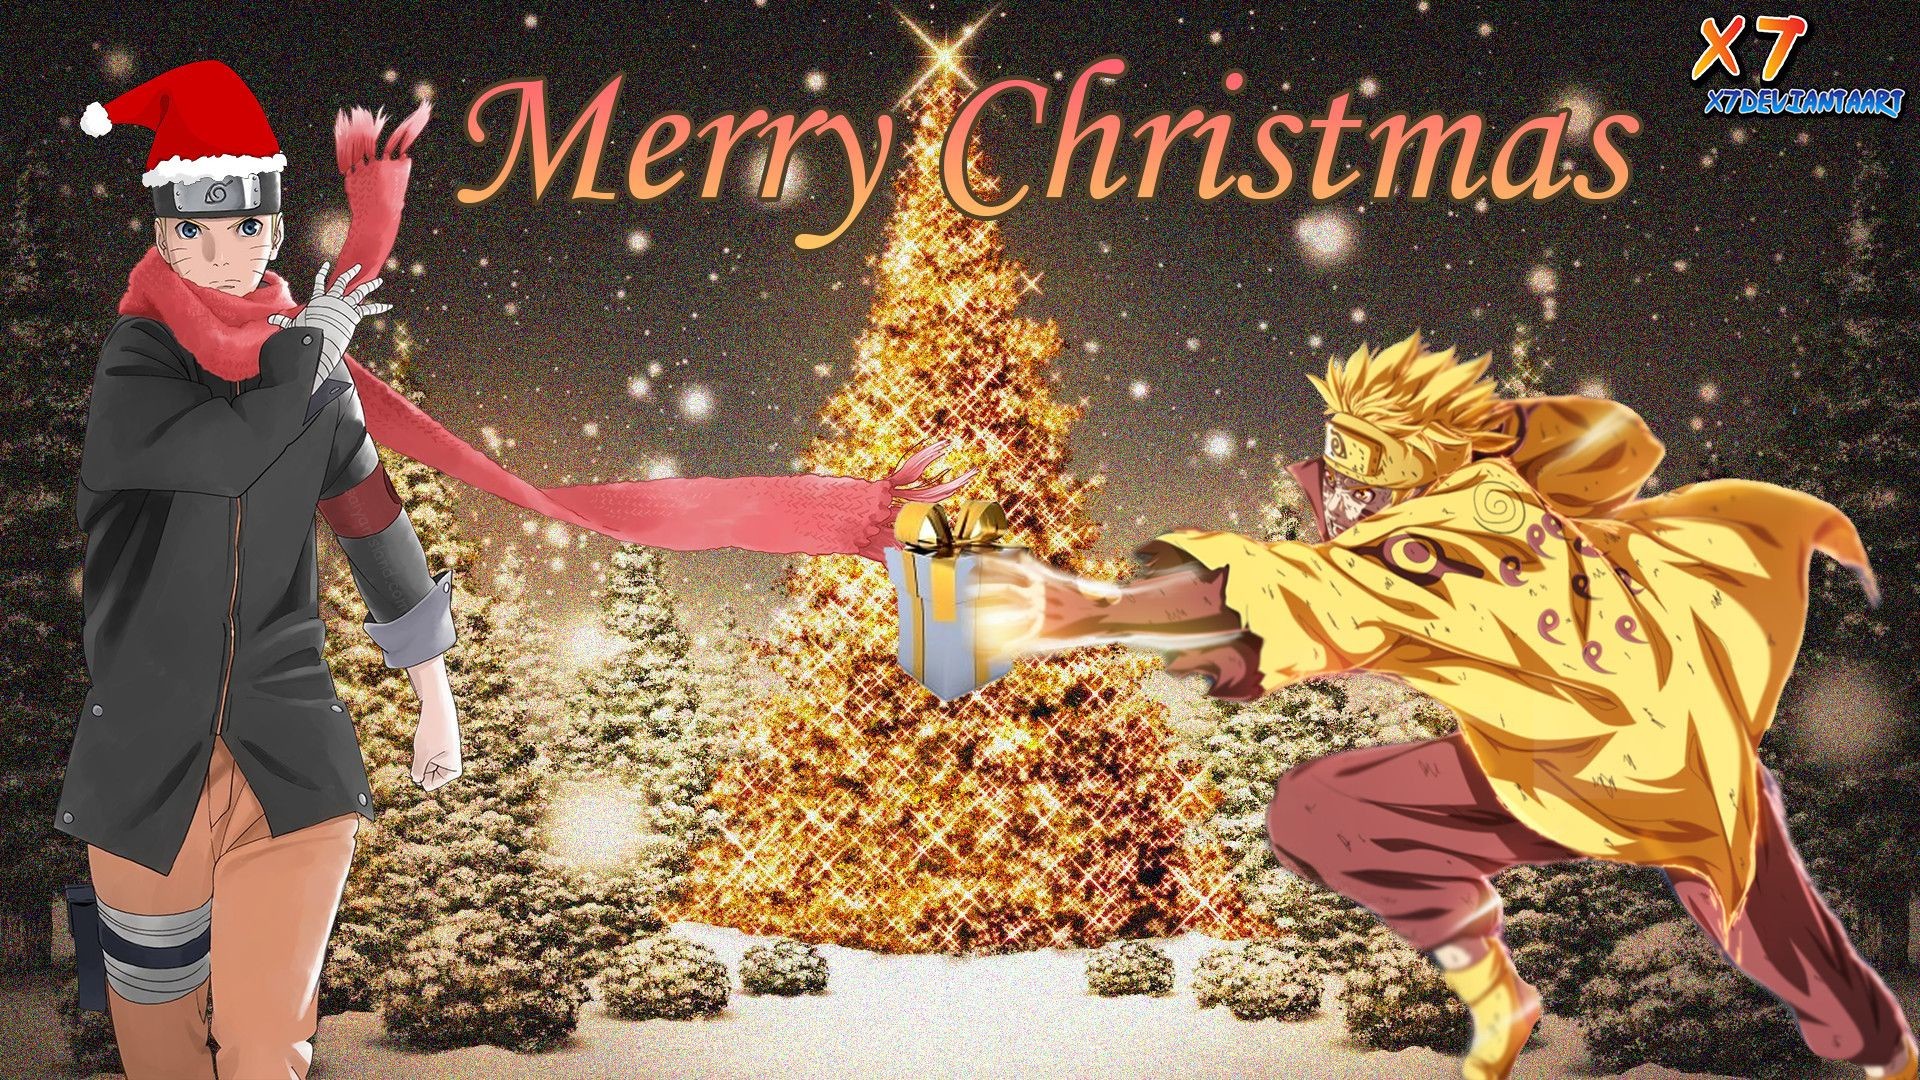 Naruto Christmas Wallpaper ·① WallpaperTag